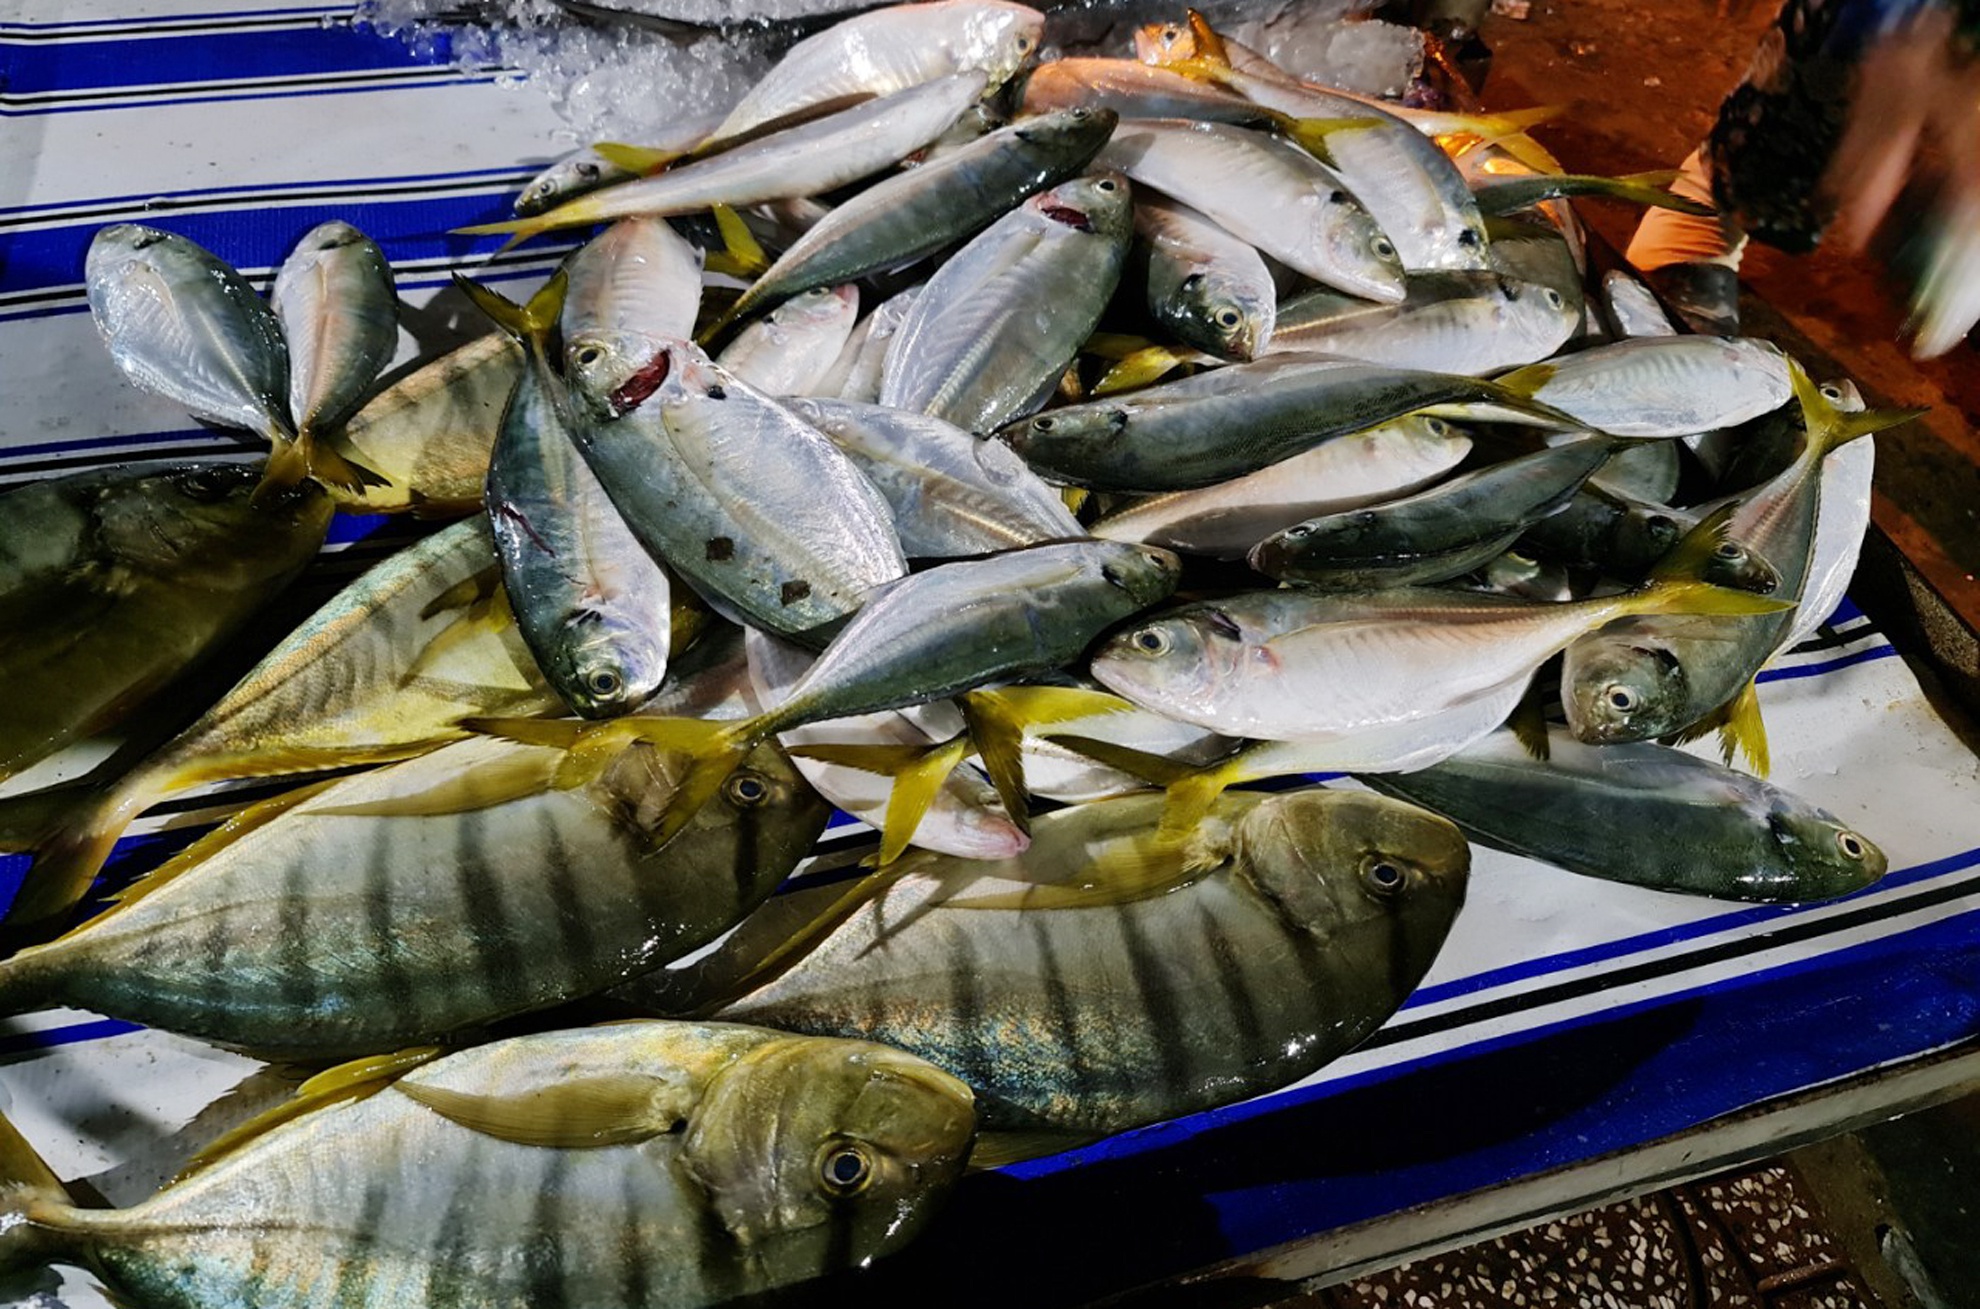 Hai san tuoi song gia re bat ngo anh 2  - ha_tien_7_zing - Giá hải sản ở chợ Hà Tiên dịp lễ khá rẻ